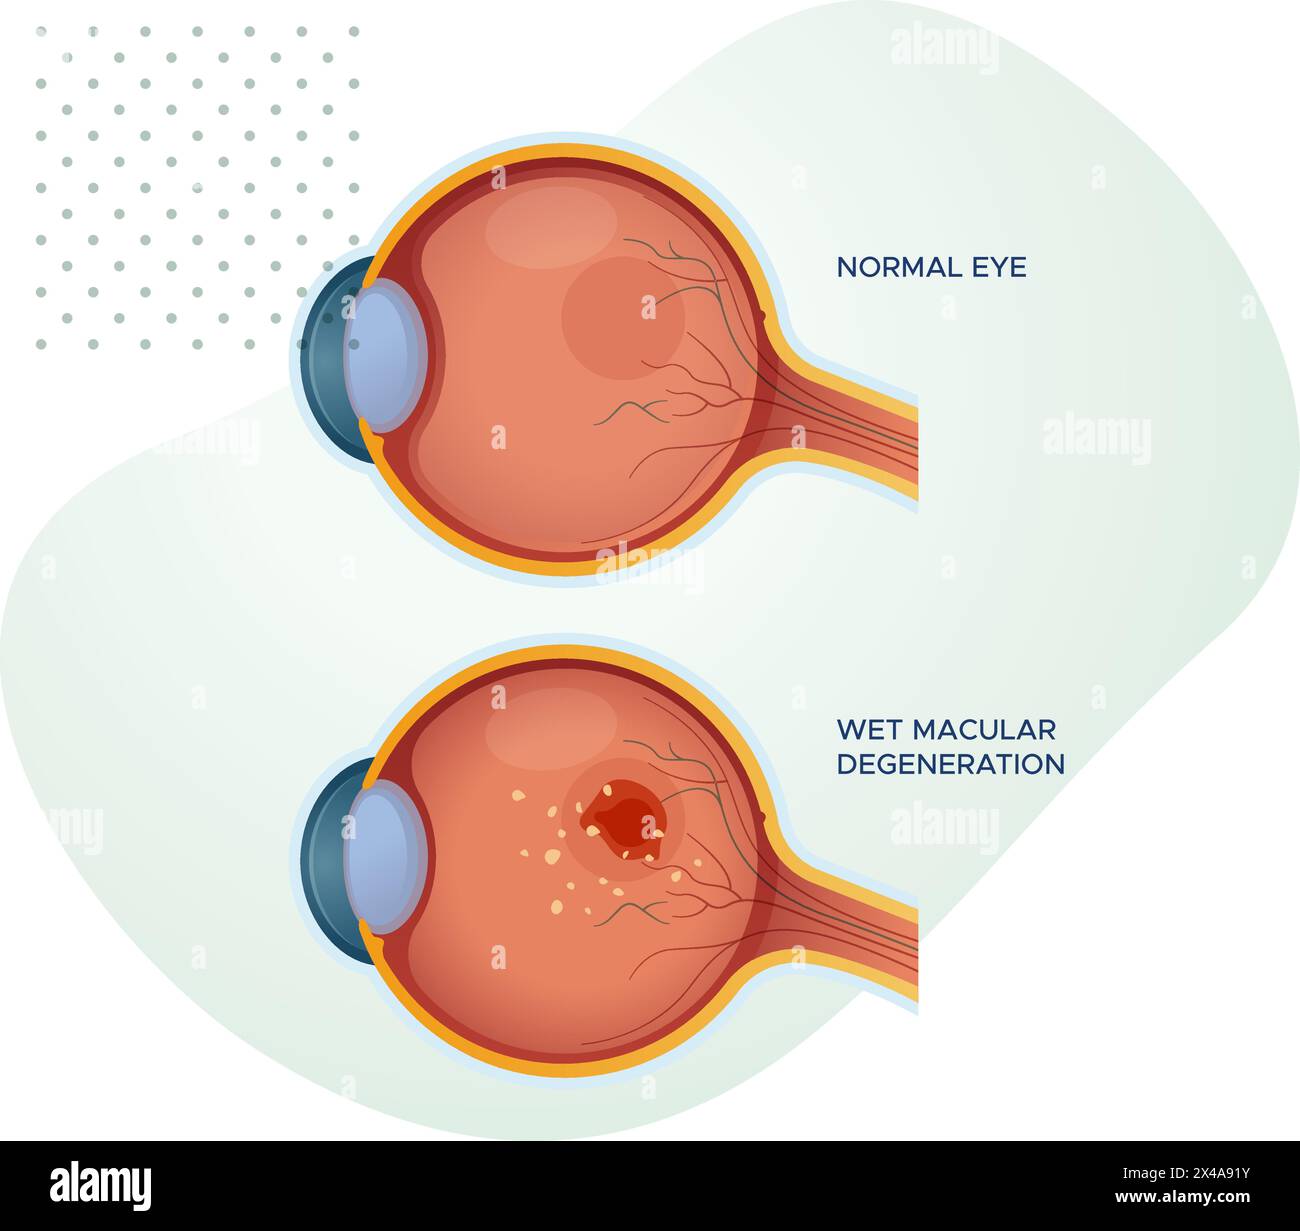 Gesunde Augen vs nasse Makuladegeneration - Stock-Illustration als EPS 10 Datei Stock Vektor